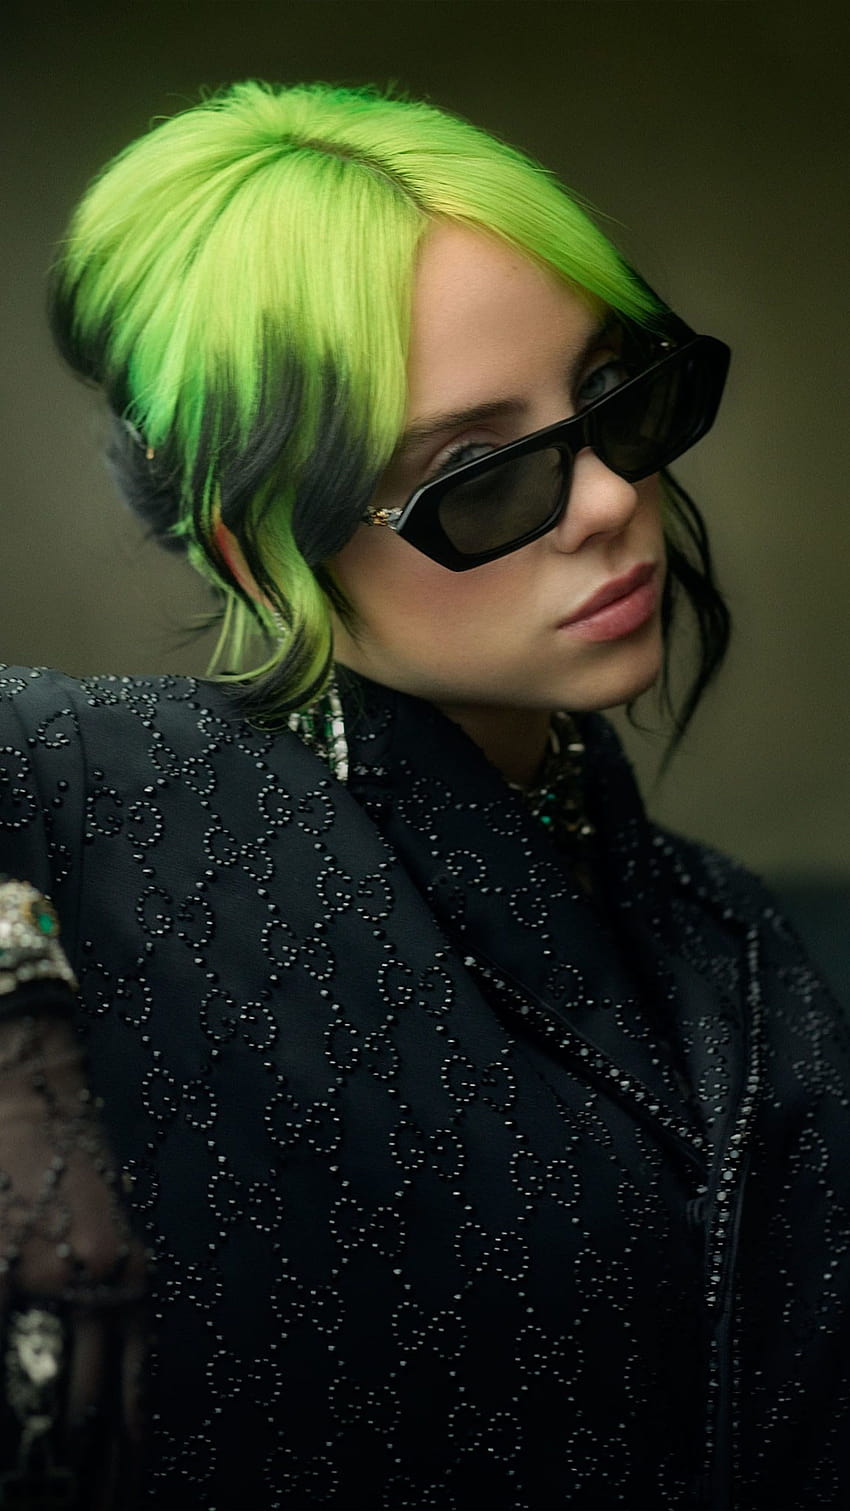 Singer Billie Eilish Green Hair Ultra Mobile, green mobile HD phone wallpaper